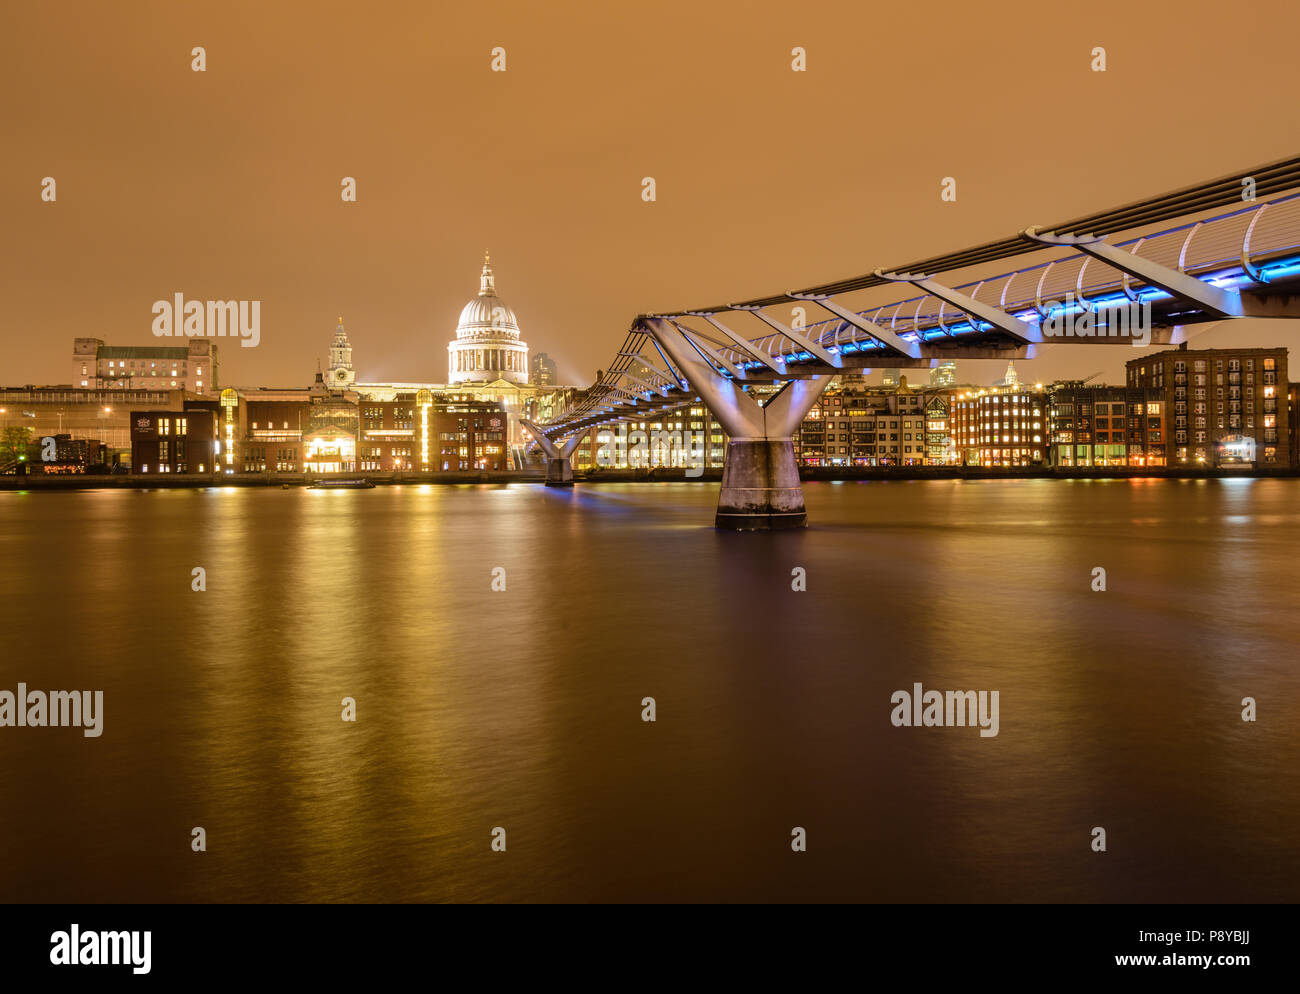 La larga exposición con vistas al paisaje de la Catedral de San Pablo y el Puente del Milenio de Londres por la noche con las luces reflejadas en el río Támesis Foto de stock